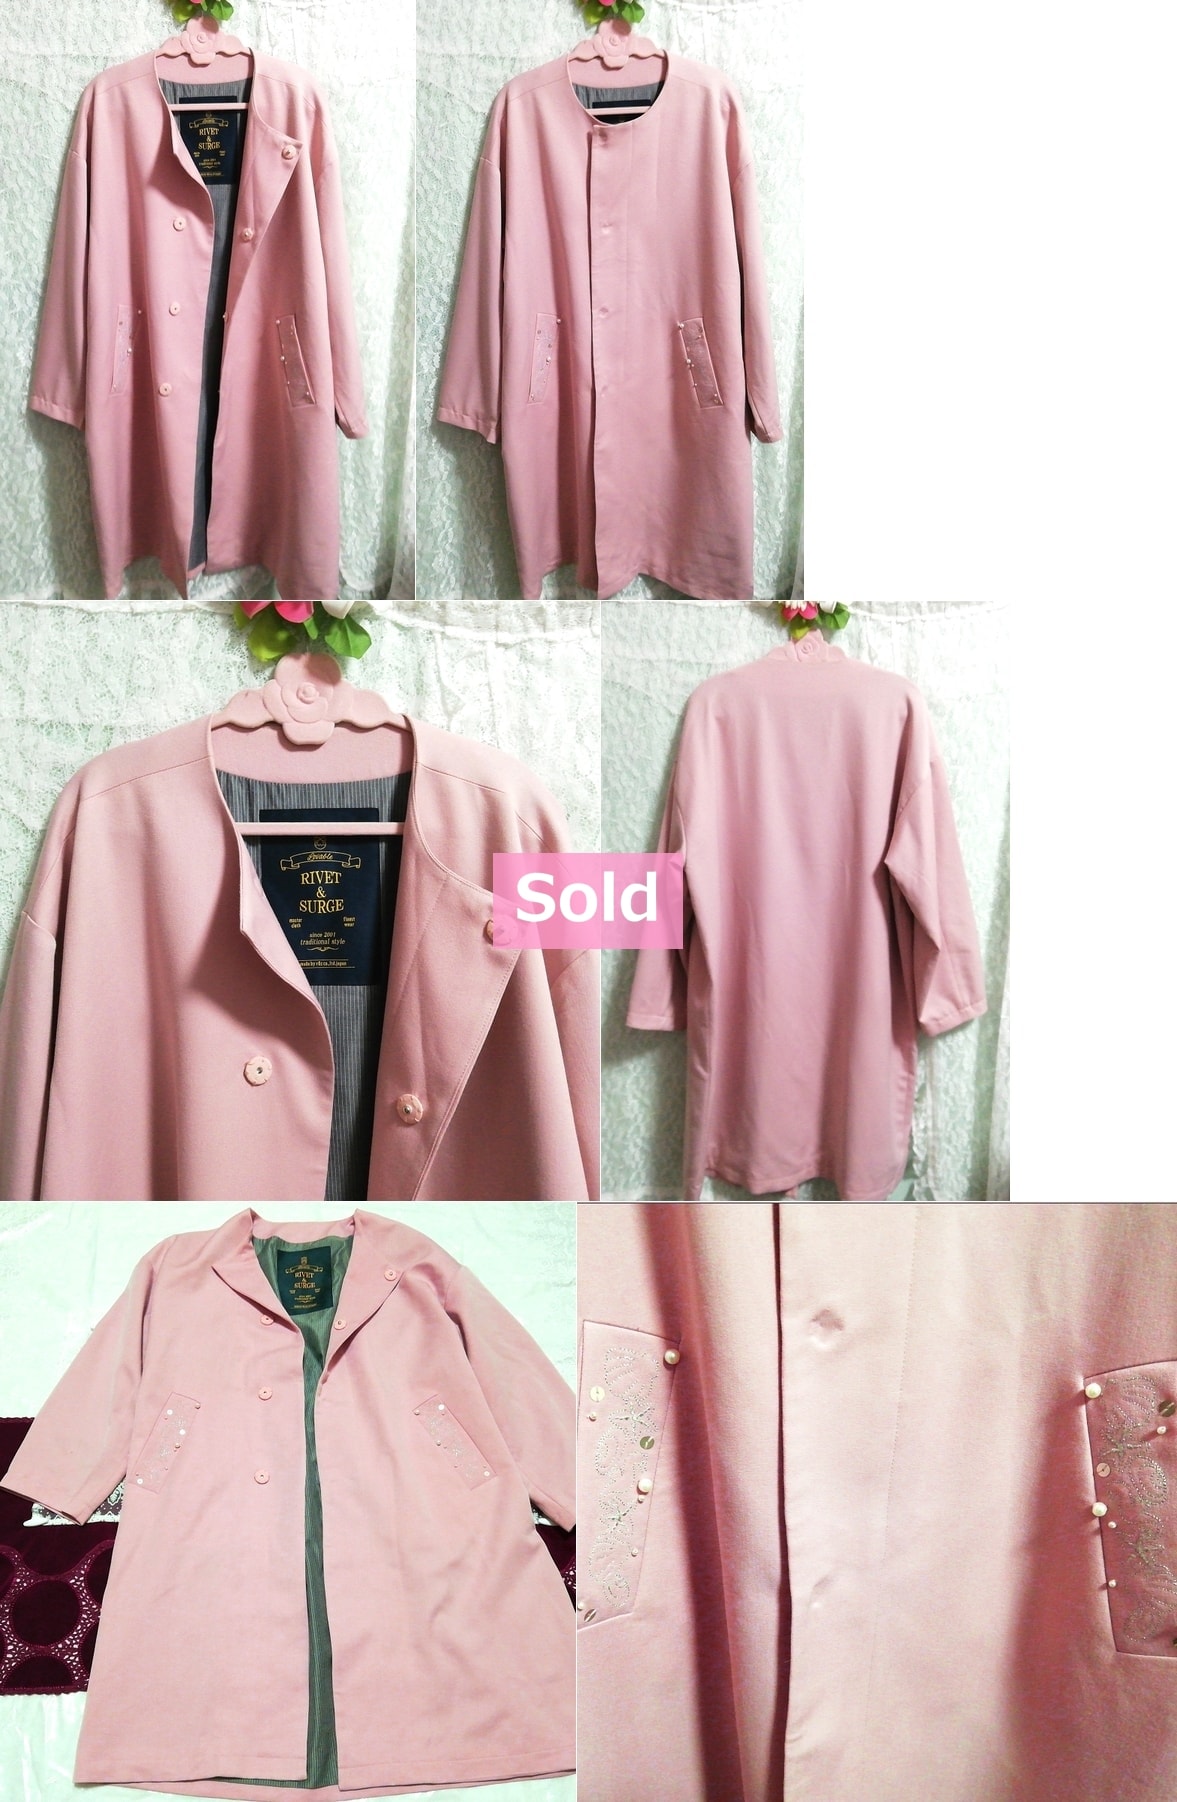 عباءة معطف طويل باللون الوردي من Rivet & Surge مصنوع في اليابان ، معطف ومعطف عام ومقاس M.